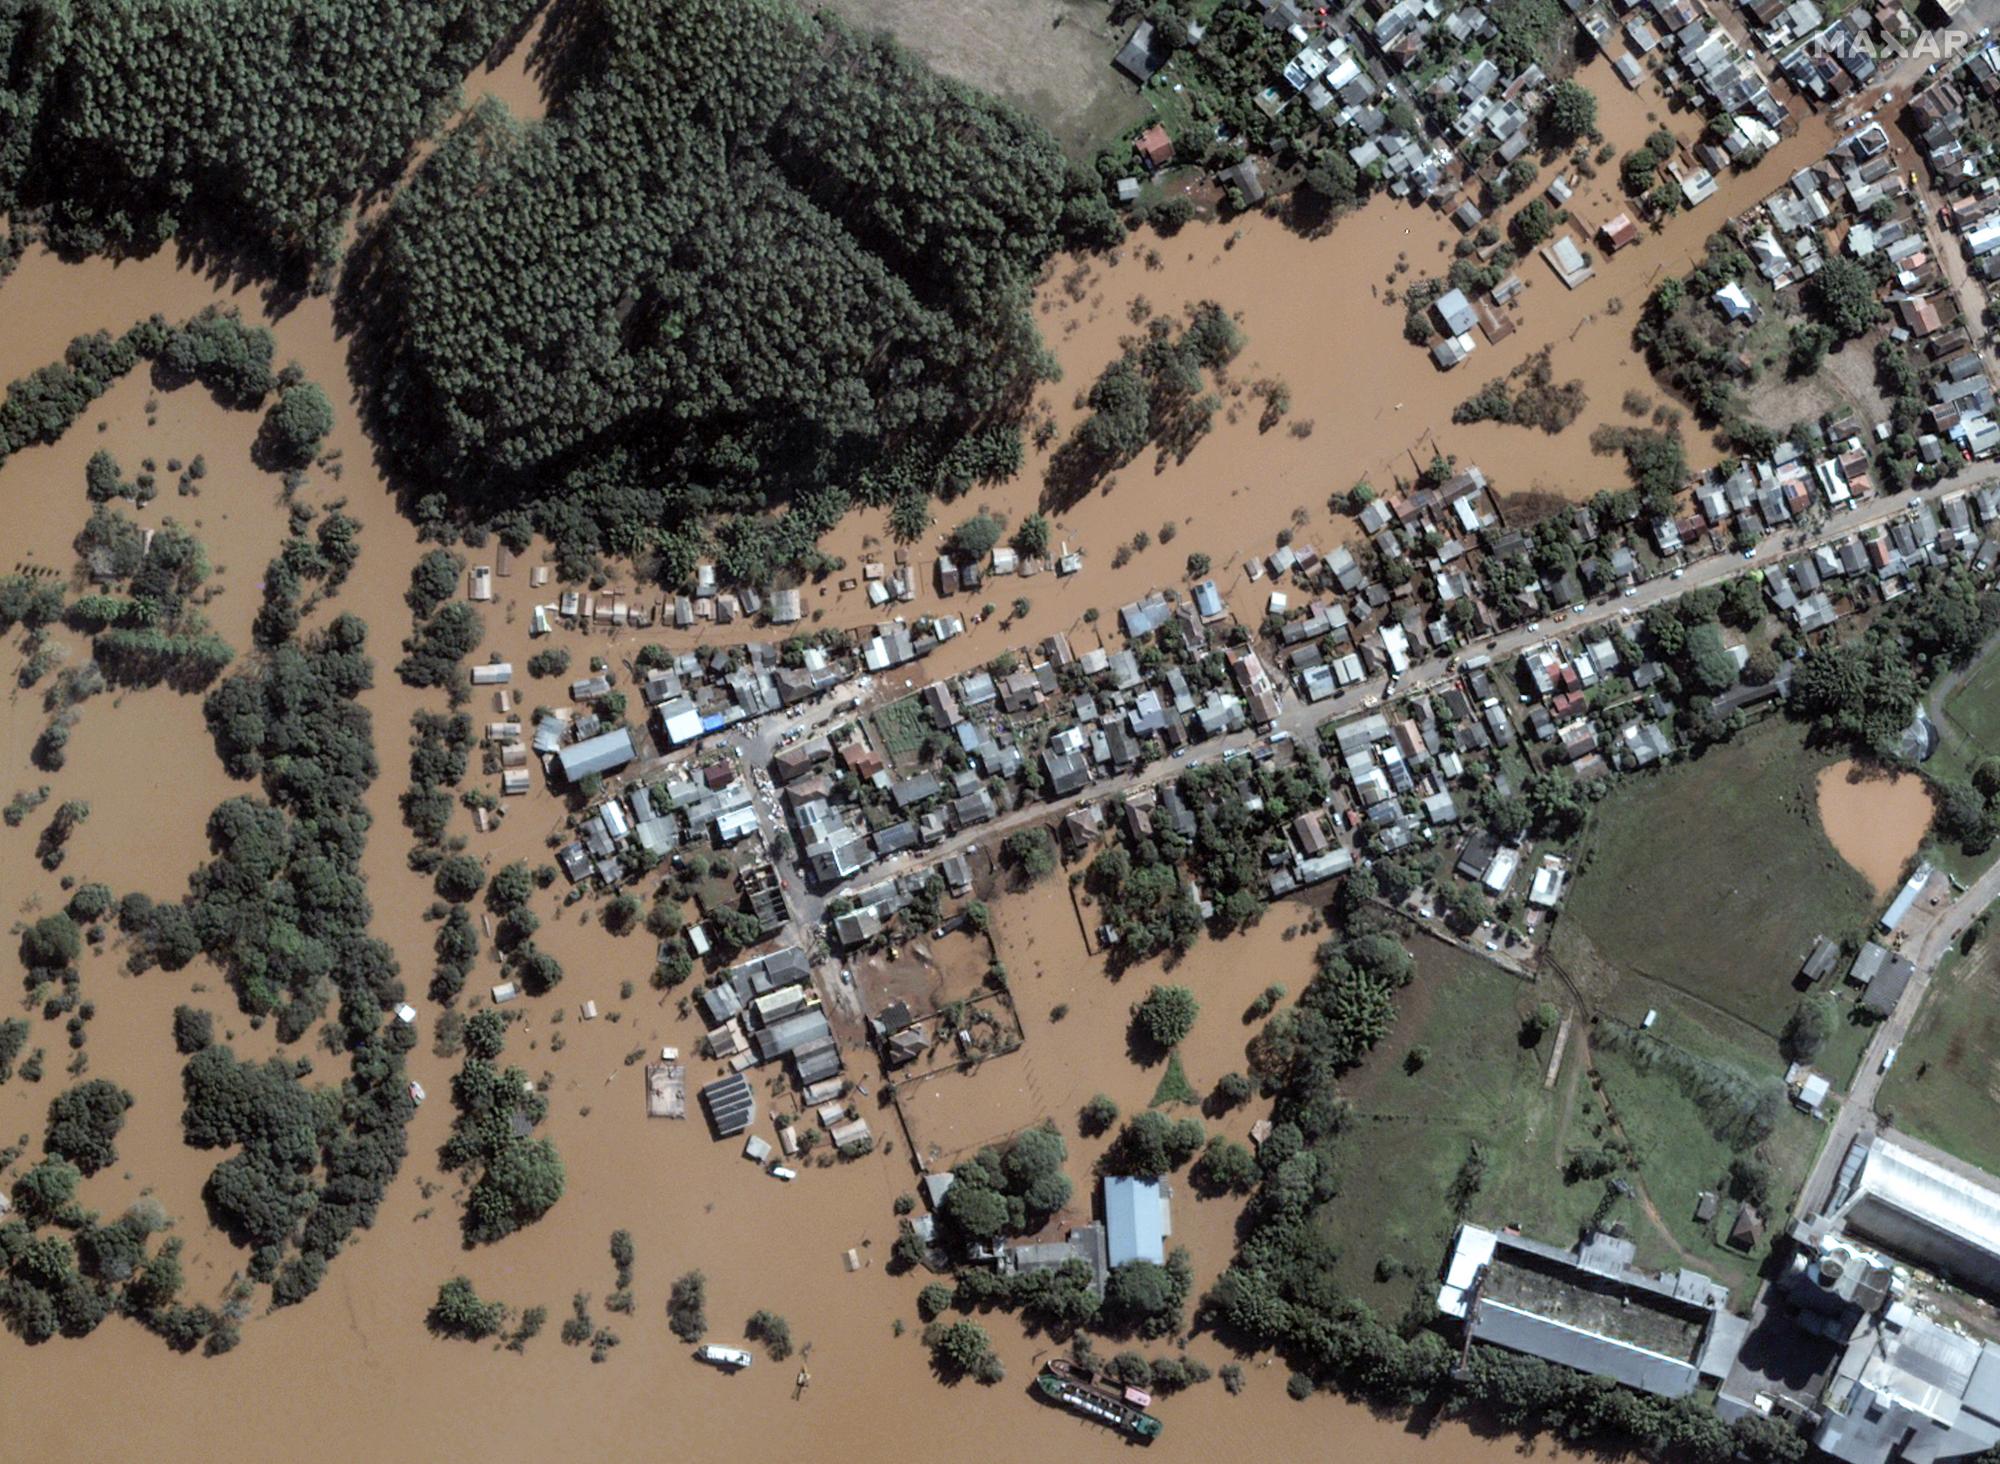 Những trận mưa lớn bắt đầu từ tuần trước đã khiến các con sông ngập lụt, làm ngập toàn bộ thị trấn và phá hủy các con đường, cây cầu trên khắp bang Rio Grande do Sul, miền nam Brazil. Sông Taquari ở Rio Grande do Sul.